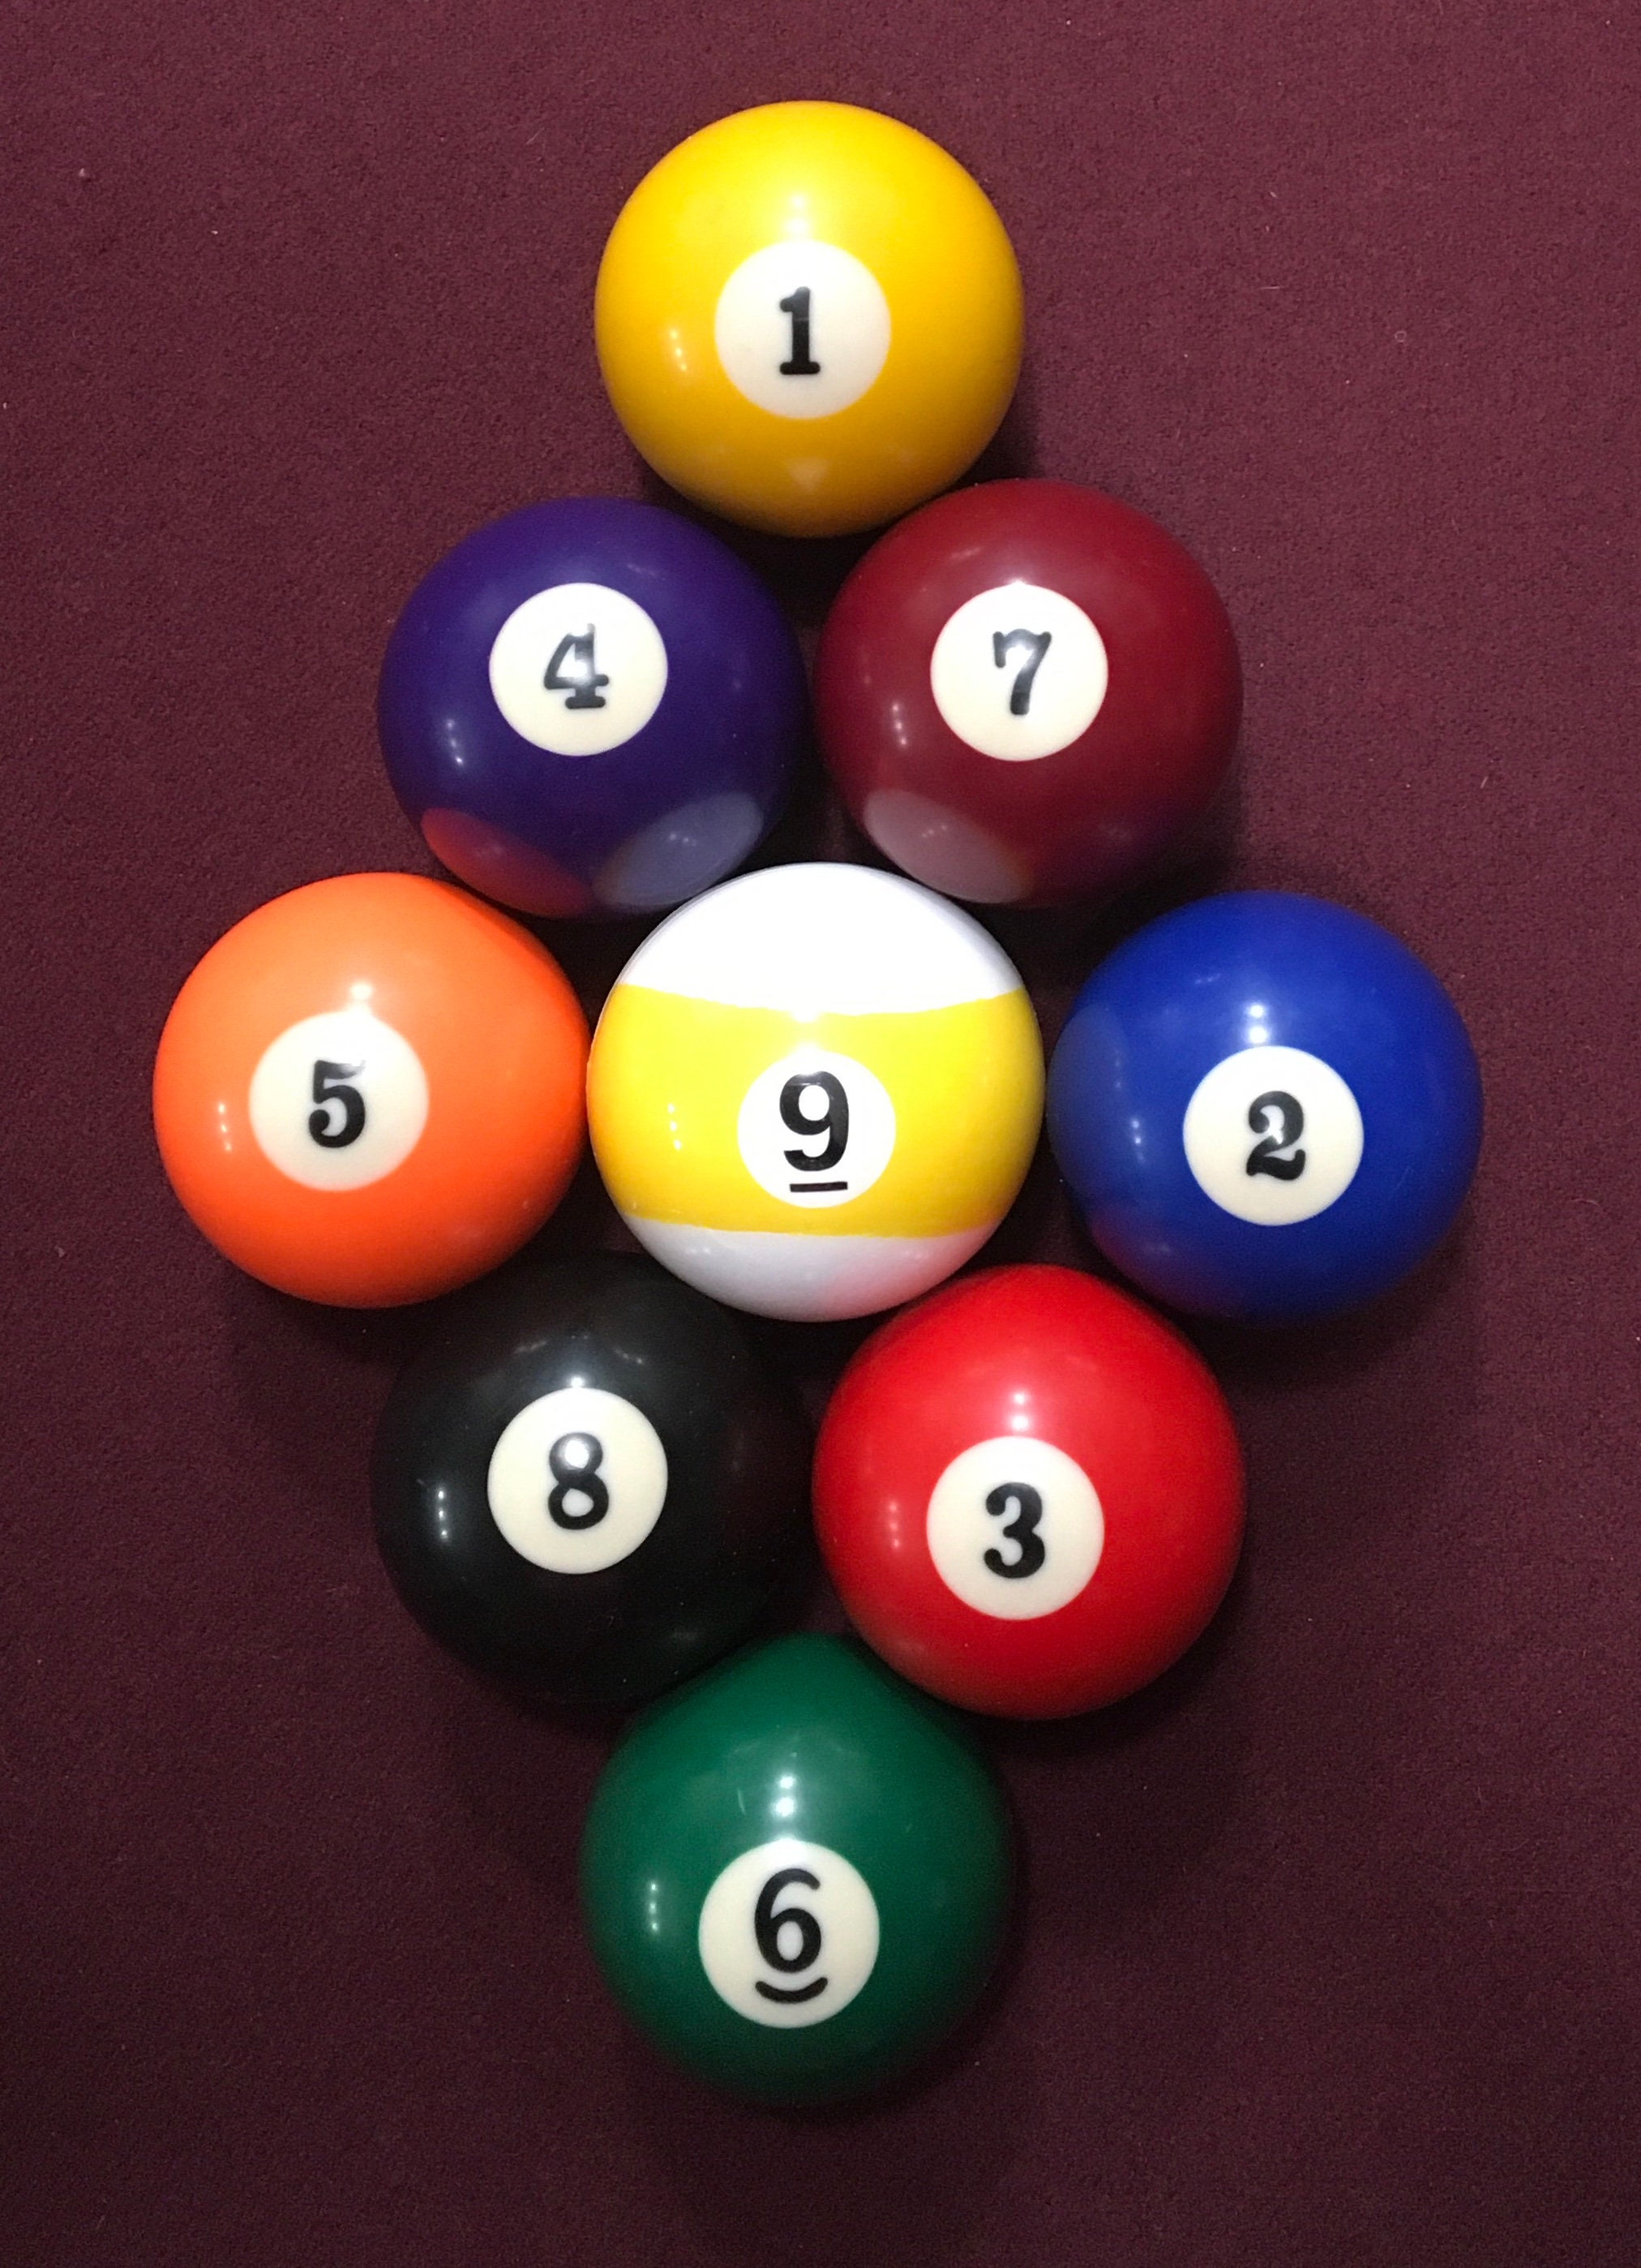 Revelación de género 8 bolas Piscina / Bola de billar Diseño de 8 bolas con  confeti rosa y/o azul Opciones de envío de USPS -  México